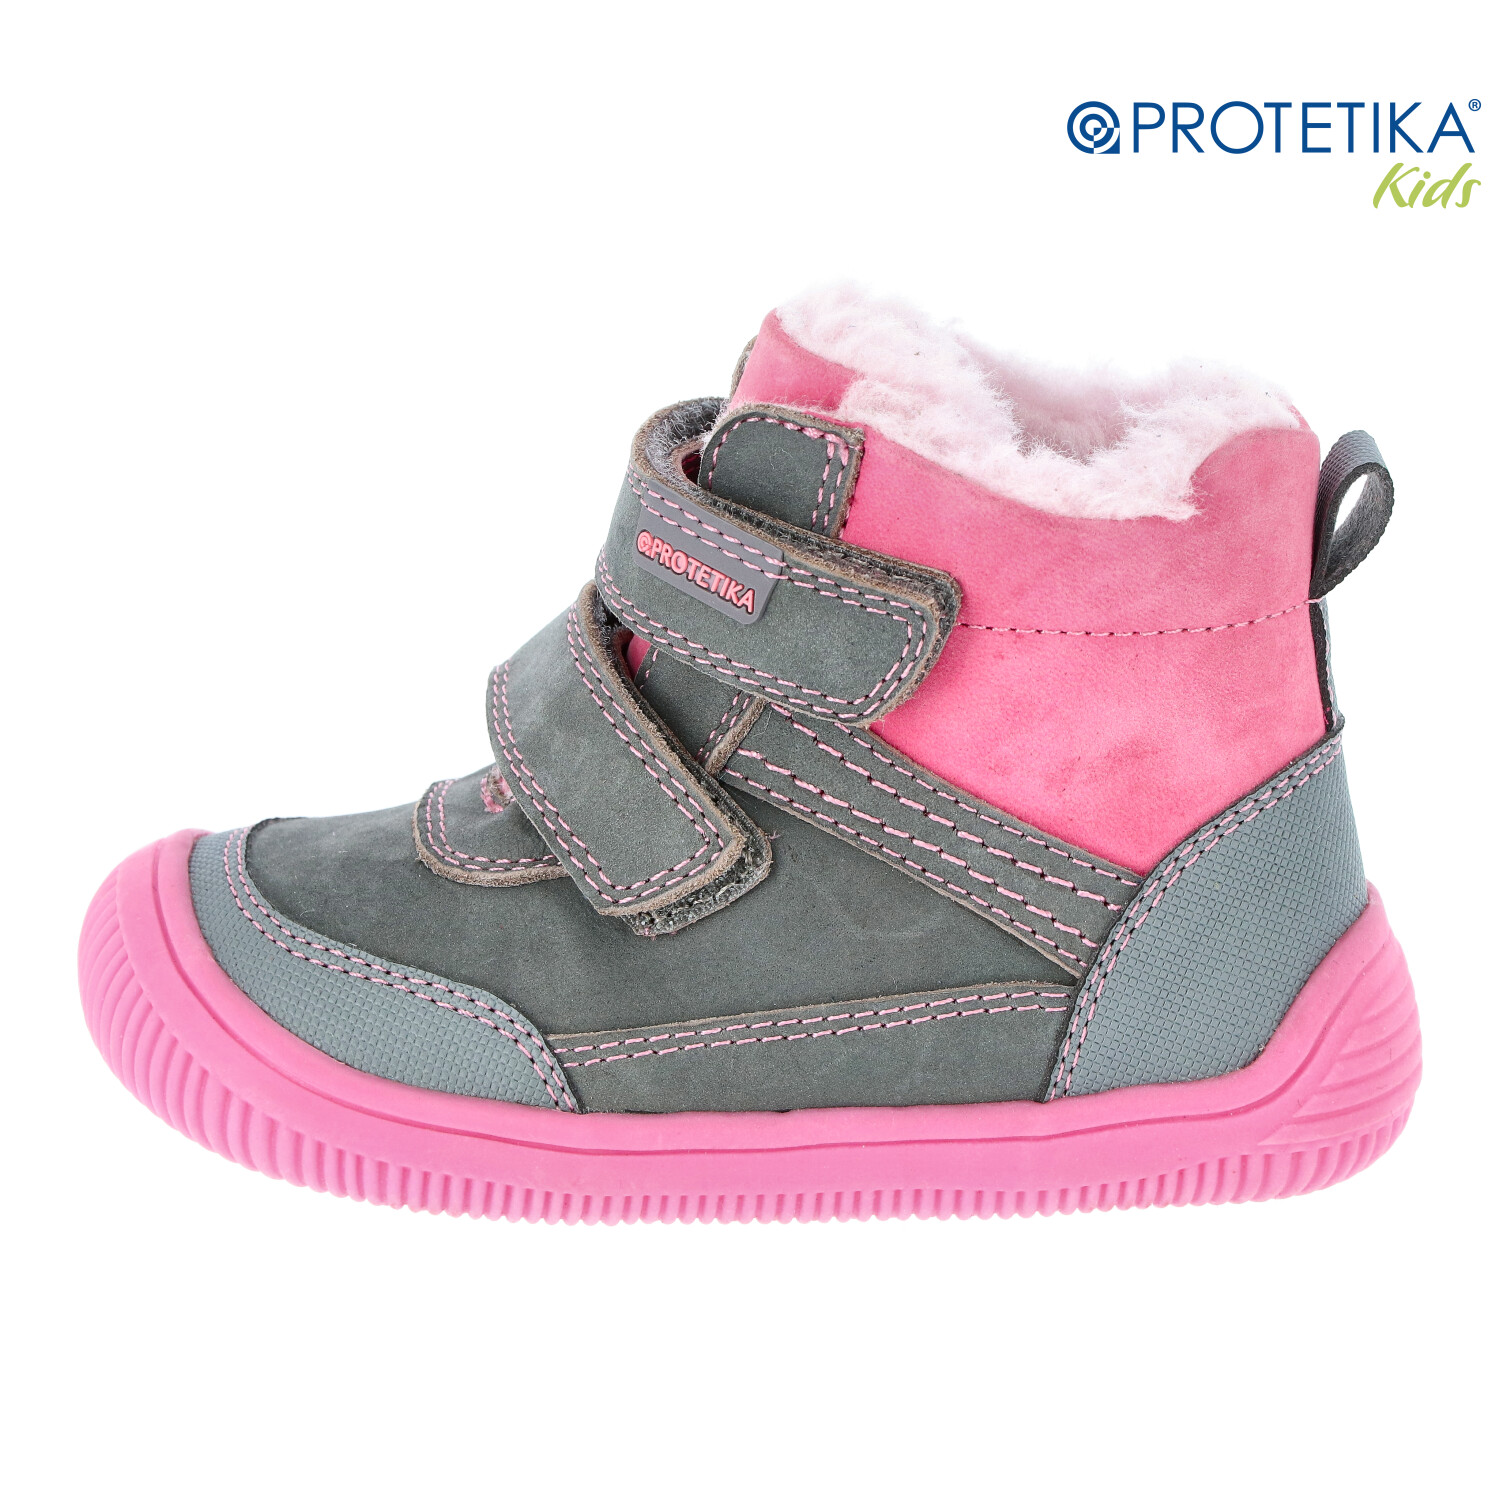 Protetika - zimné barefootové topánky TYREL grey - zateplené kožušinkou